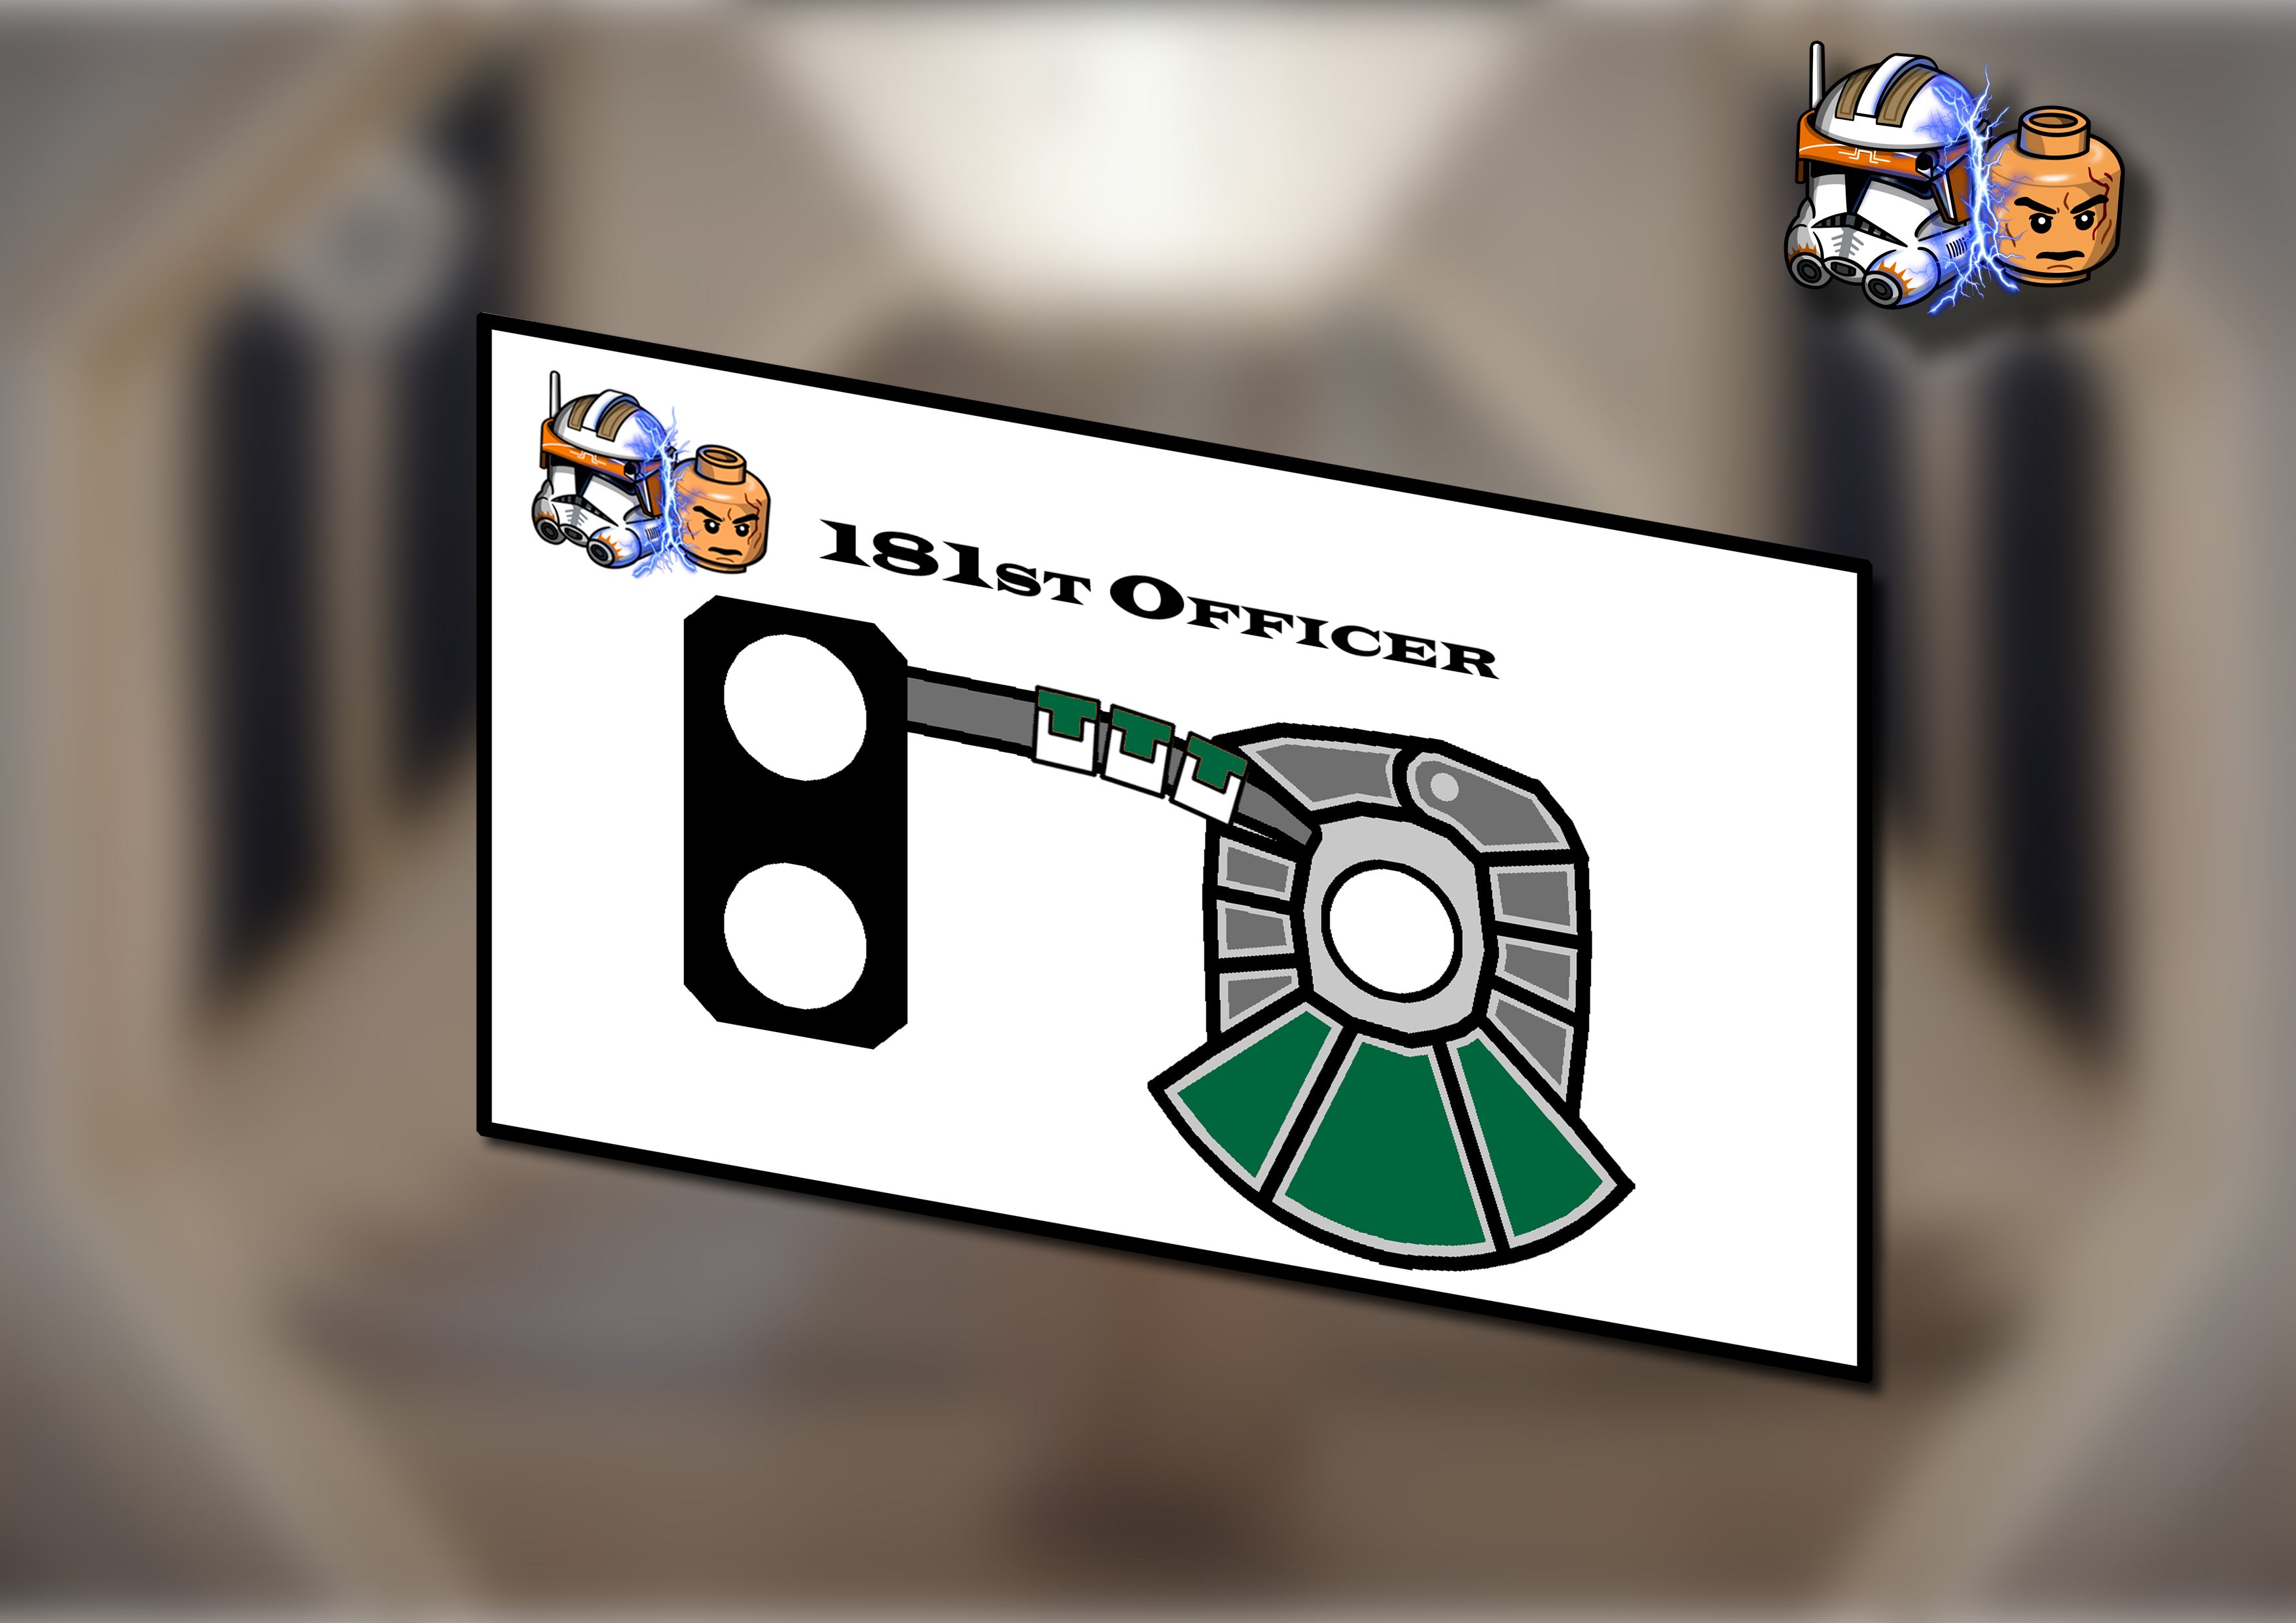 181st Officer